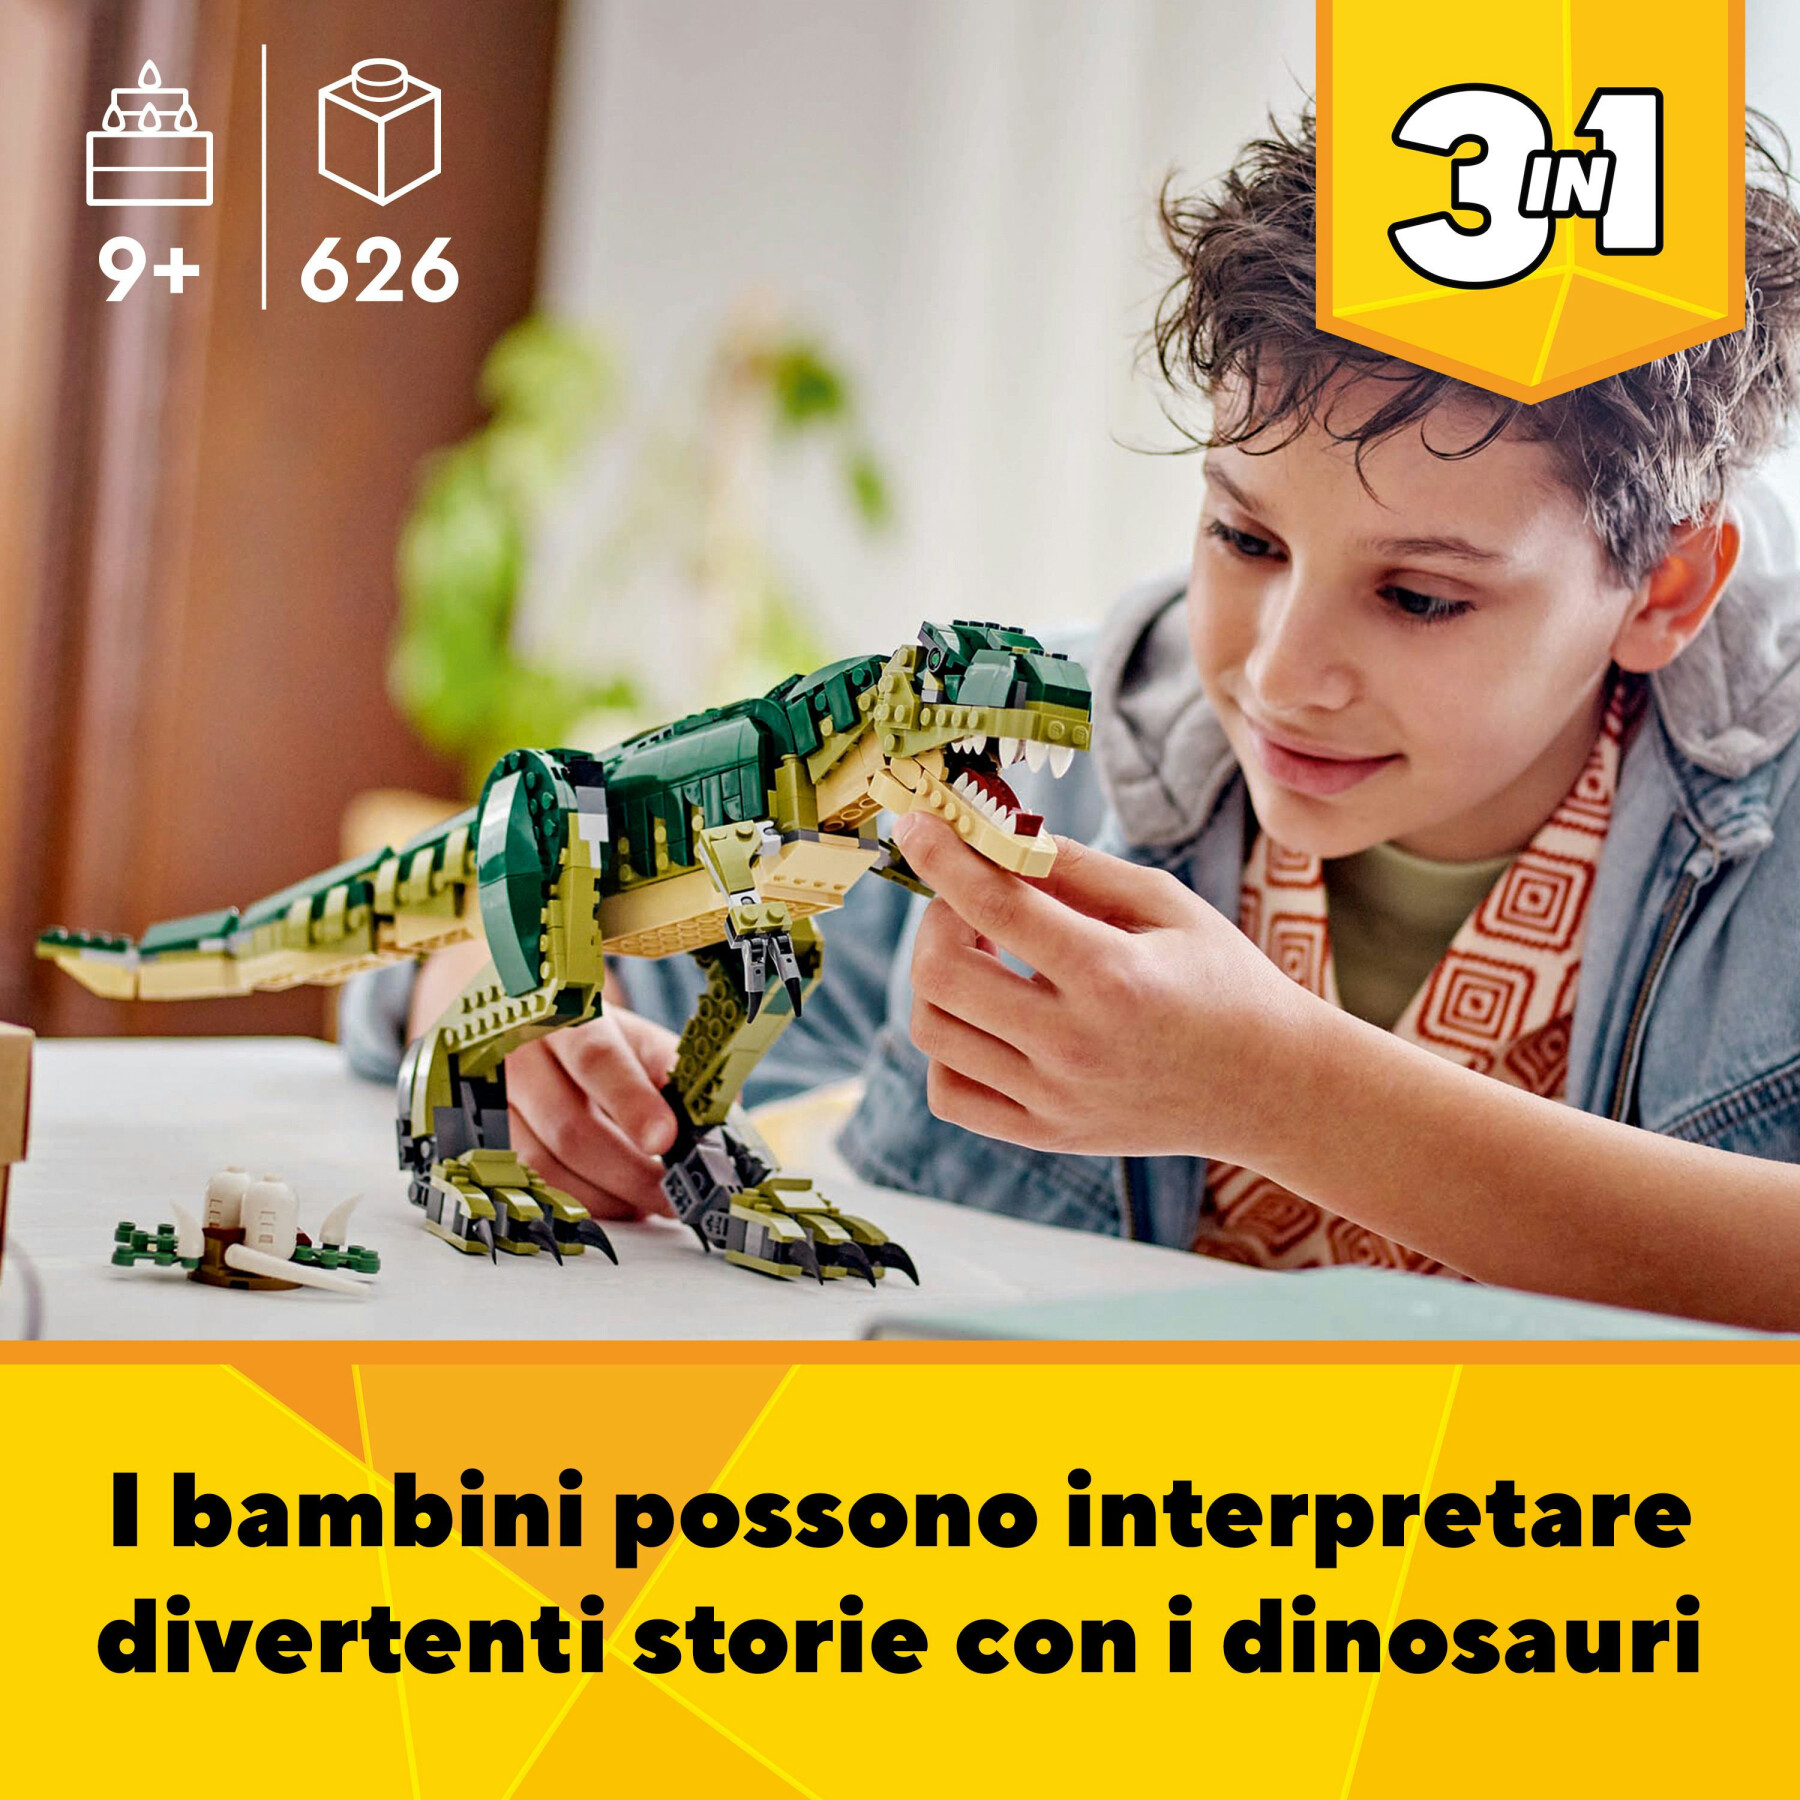 Lego creator 3 in 1 31151 t. rex, dinosauro giocattolo trasformabile in triceratopo e pterodattilo, giochi per bambini 9+ - LEGO CREATOR